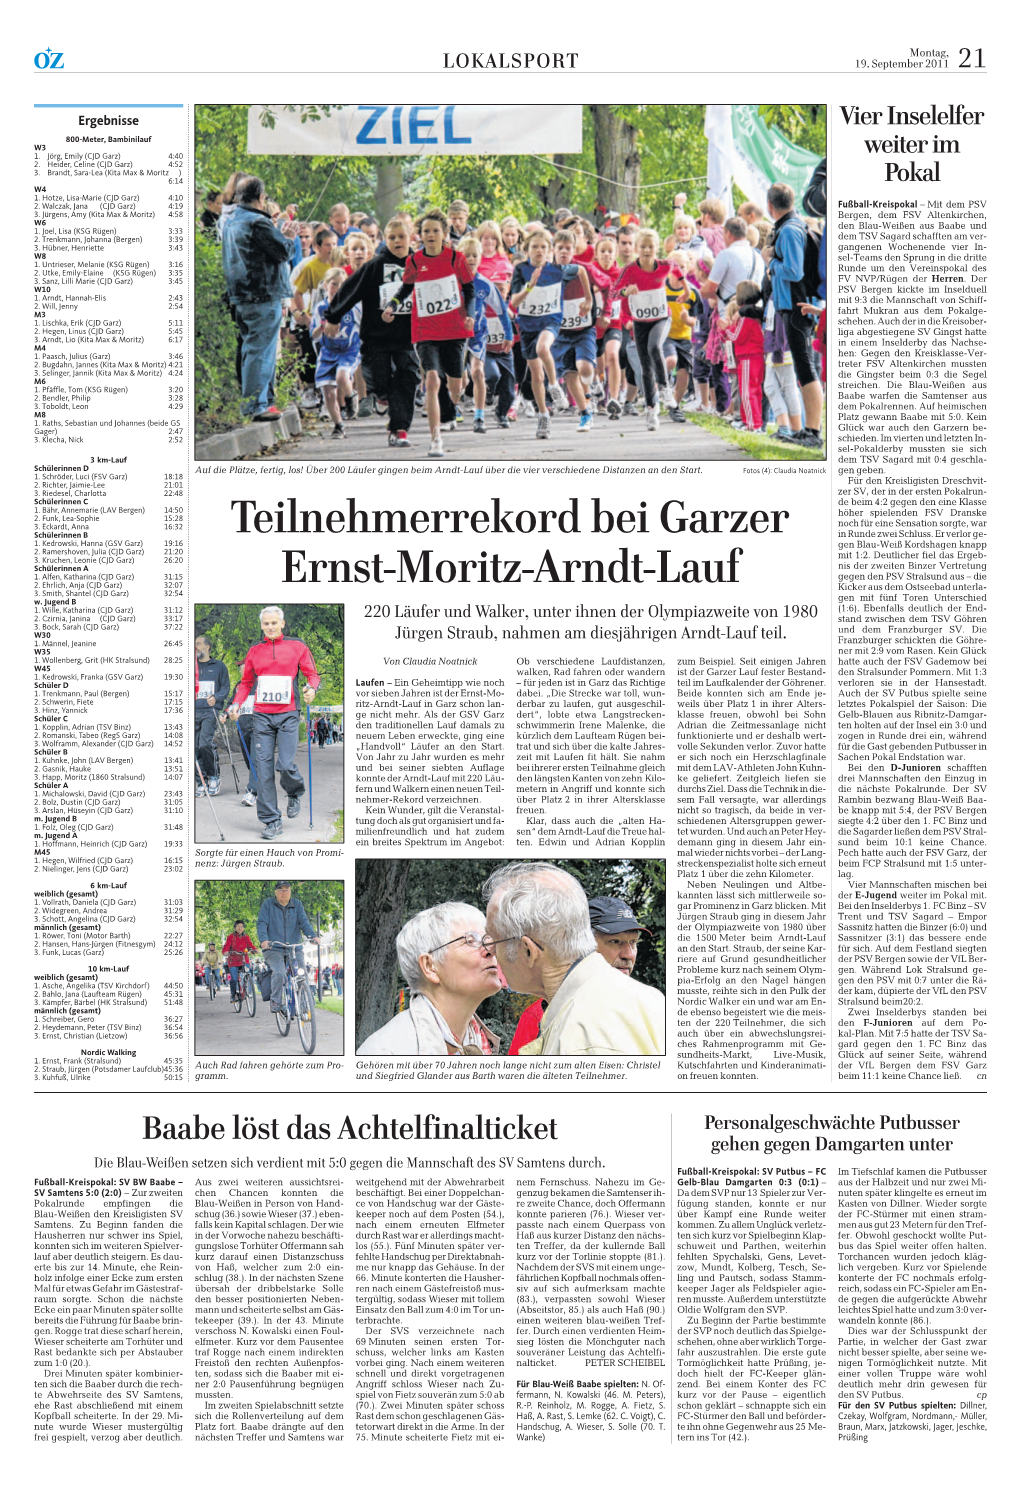 Teilnehmerrekord Bei Garzer Ernst-Moritz-Arndt-Lauf